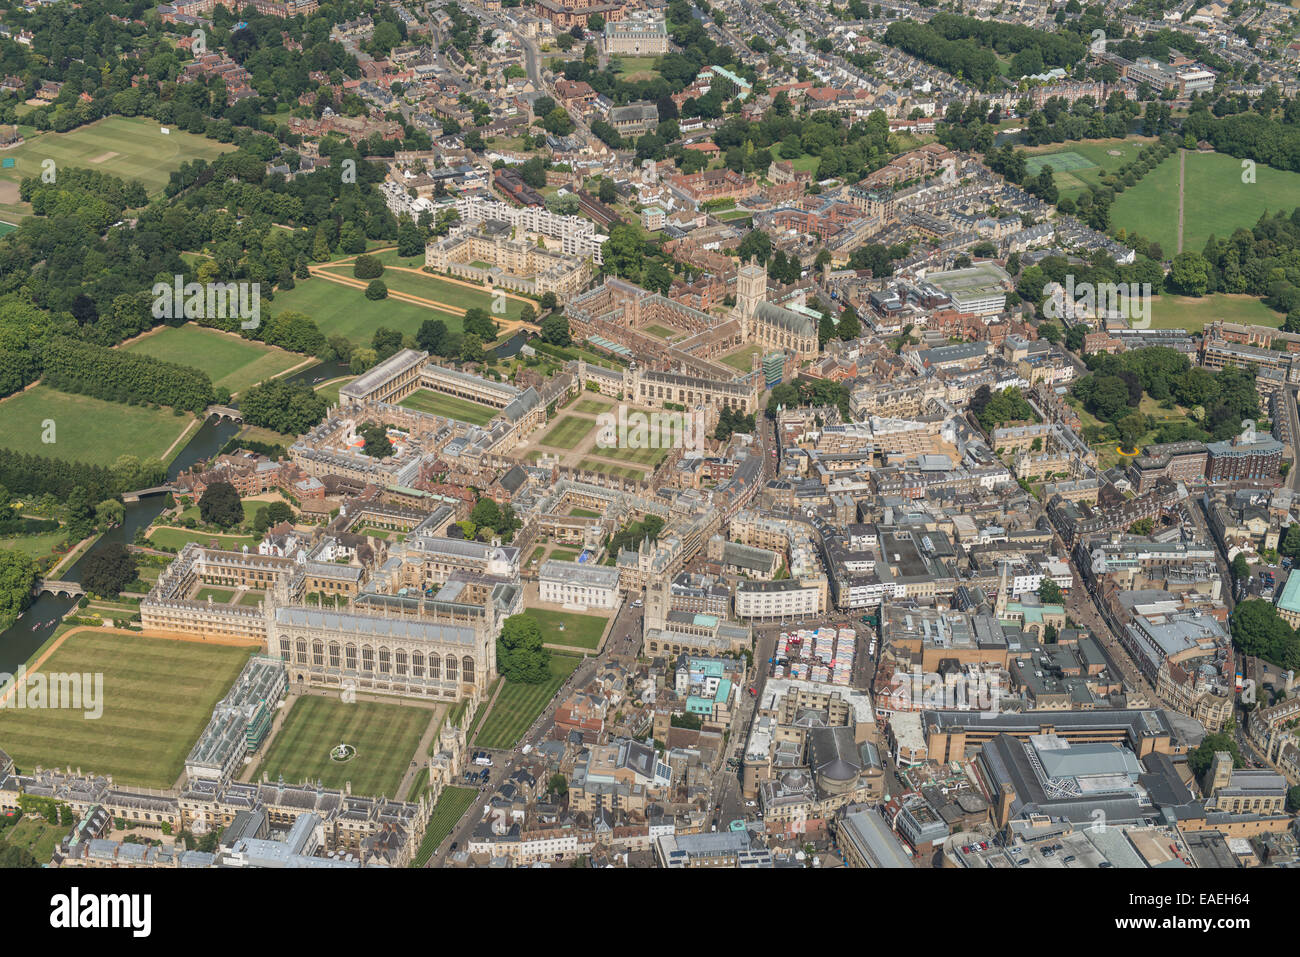 Eine Luftaufnahme zeigt einige der das Stadtzentrum und die Gebäude der Universität Cambridge Stockfoto